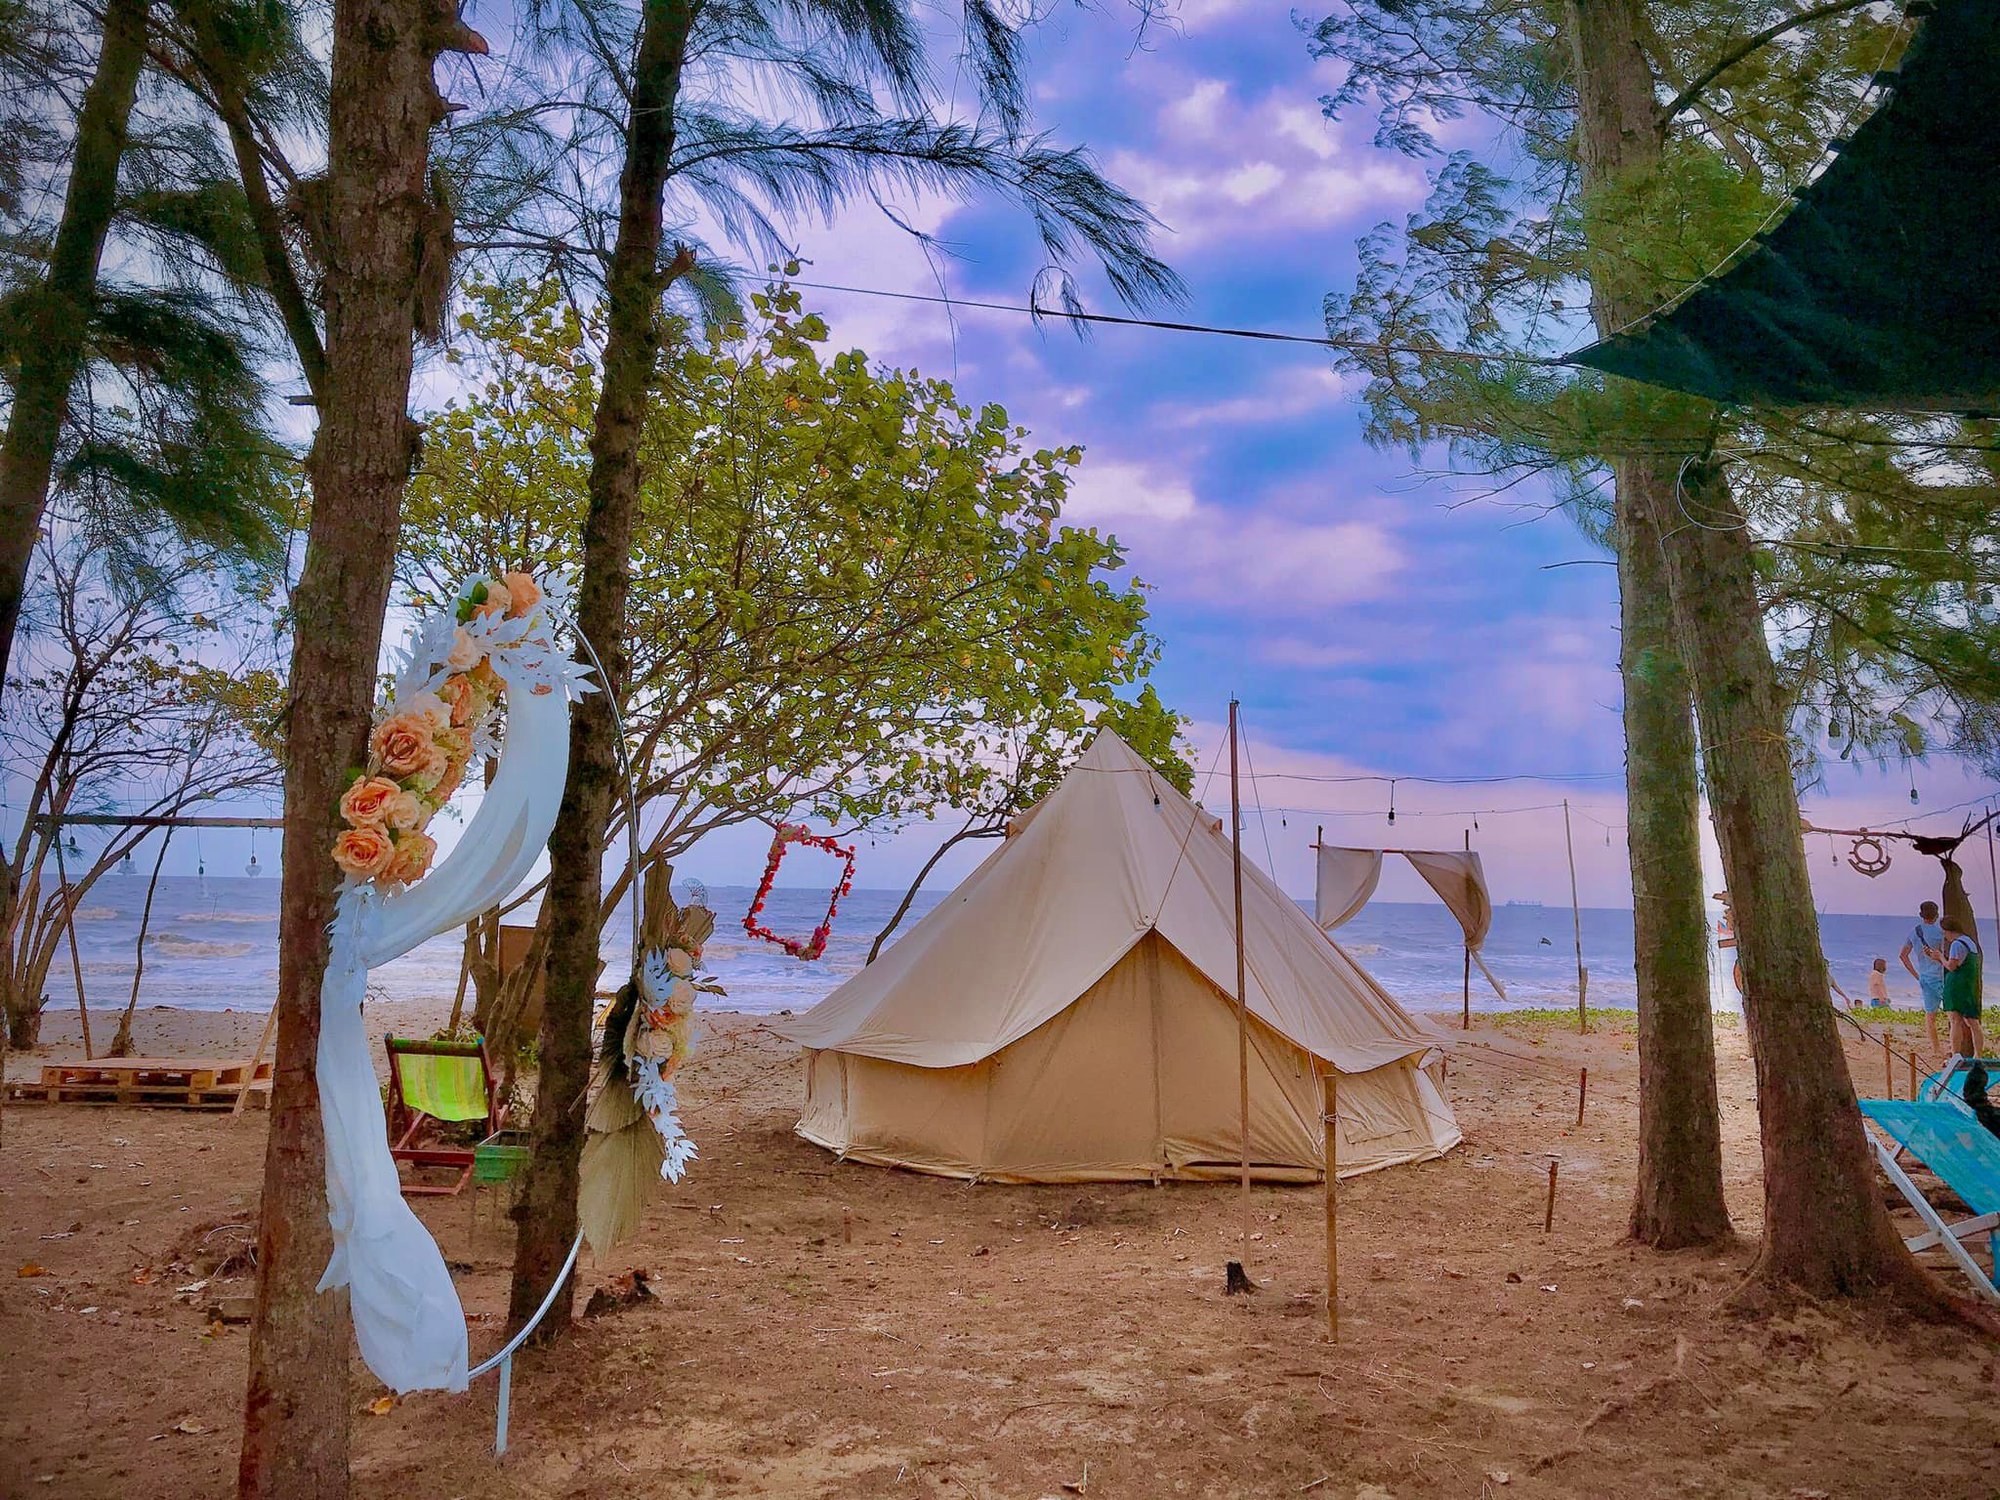 Khu cắm trại Cần Giờ nổi tiếng với dân TP.HCM vì có nhiều hoạt động vui chơi thư giãn - ảnh 2